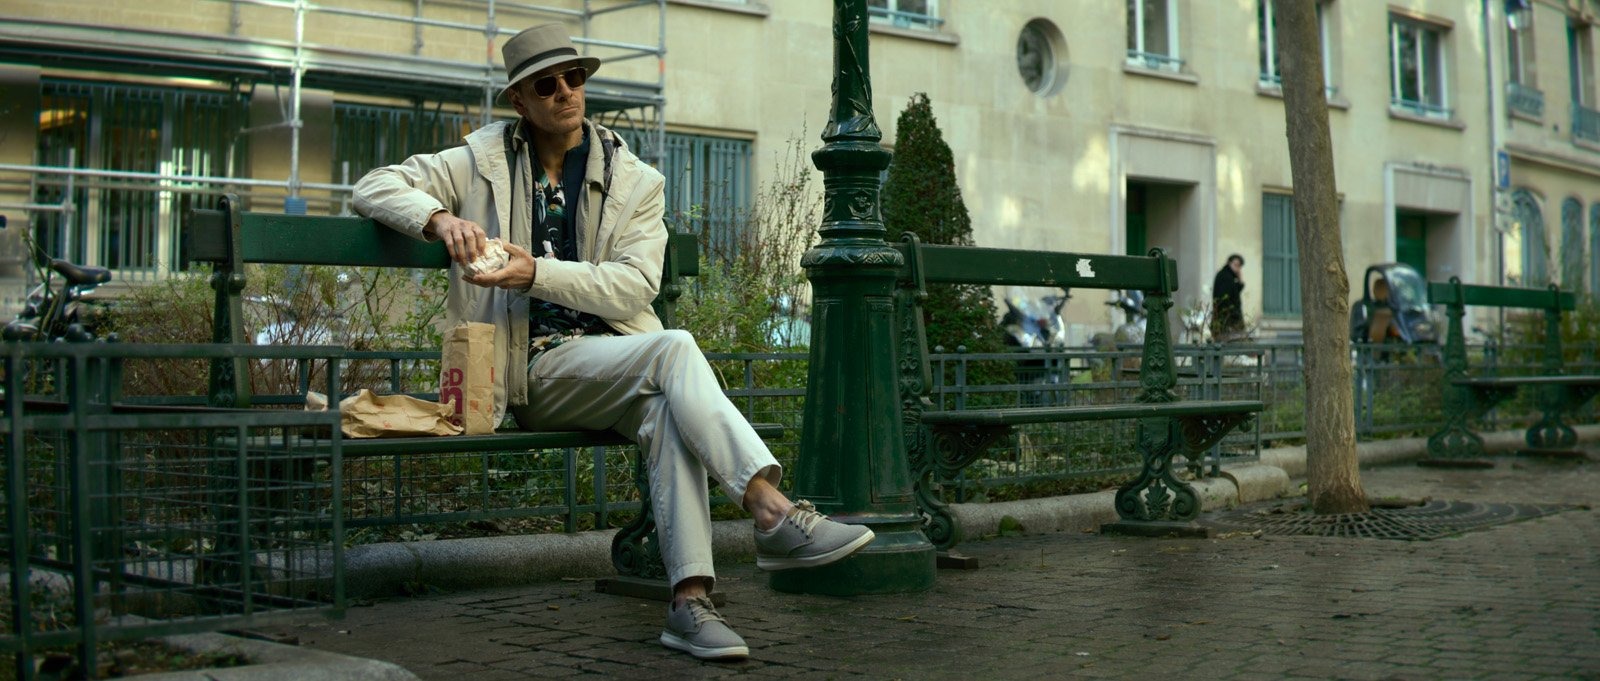 Michael Fassbender sur un banc parisien avec son look de touriste allemand dans The Killer